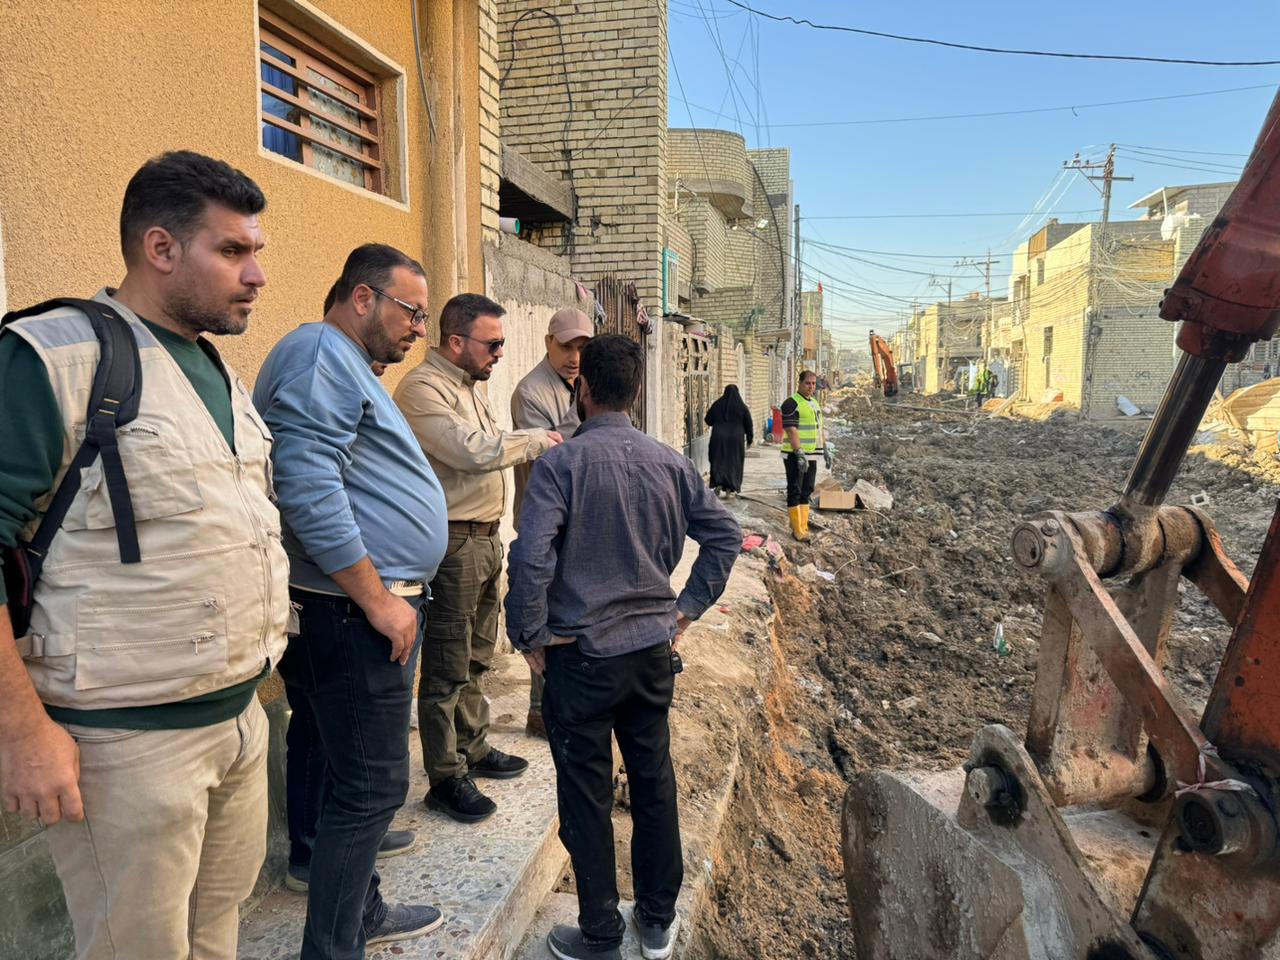 المدير العام يزور مشروع تطوير منطقة الشرطة الخامسة وشهداء السيدية في محافظة بغداد